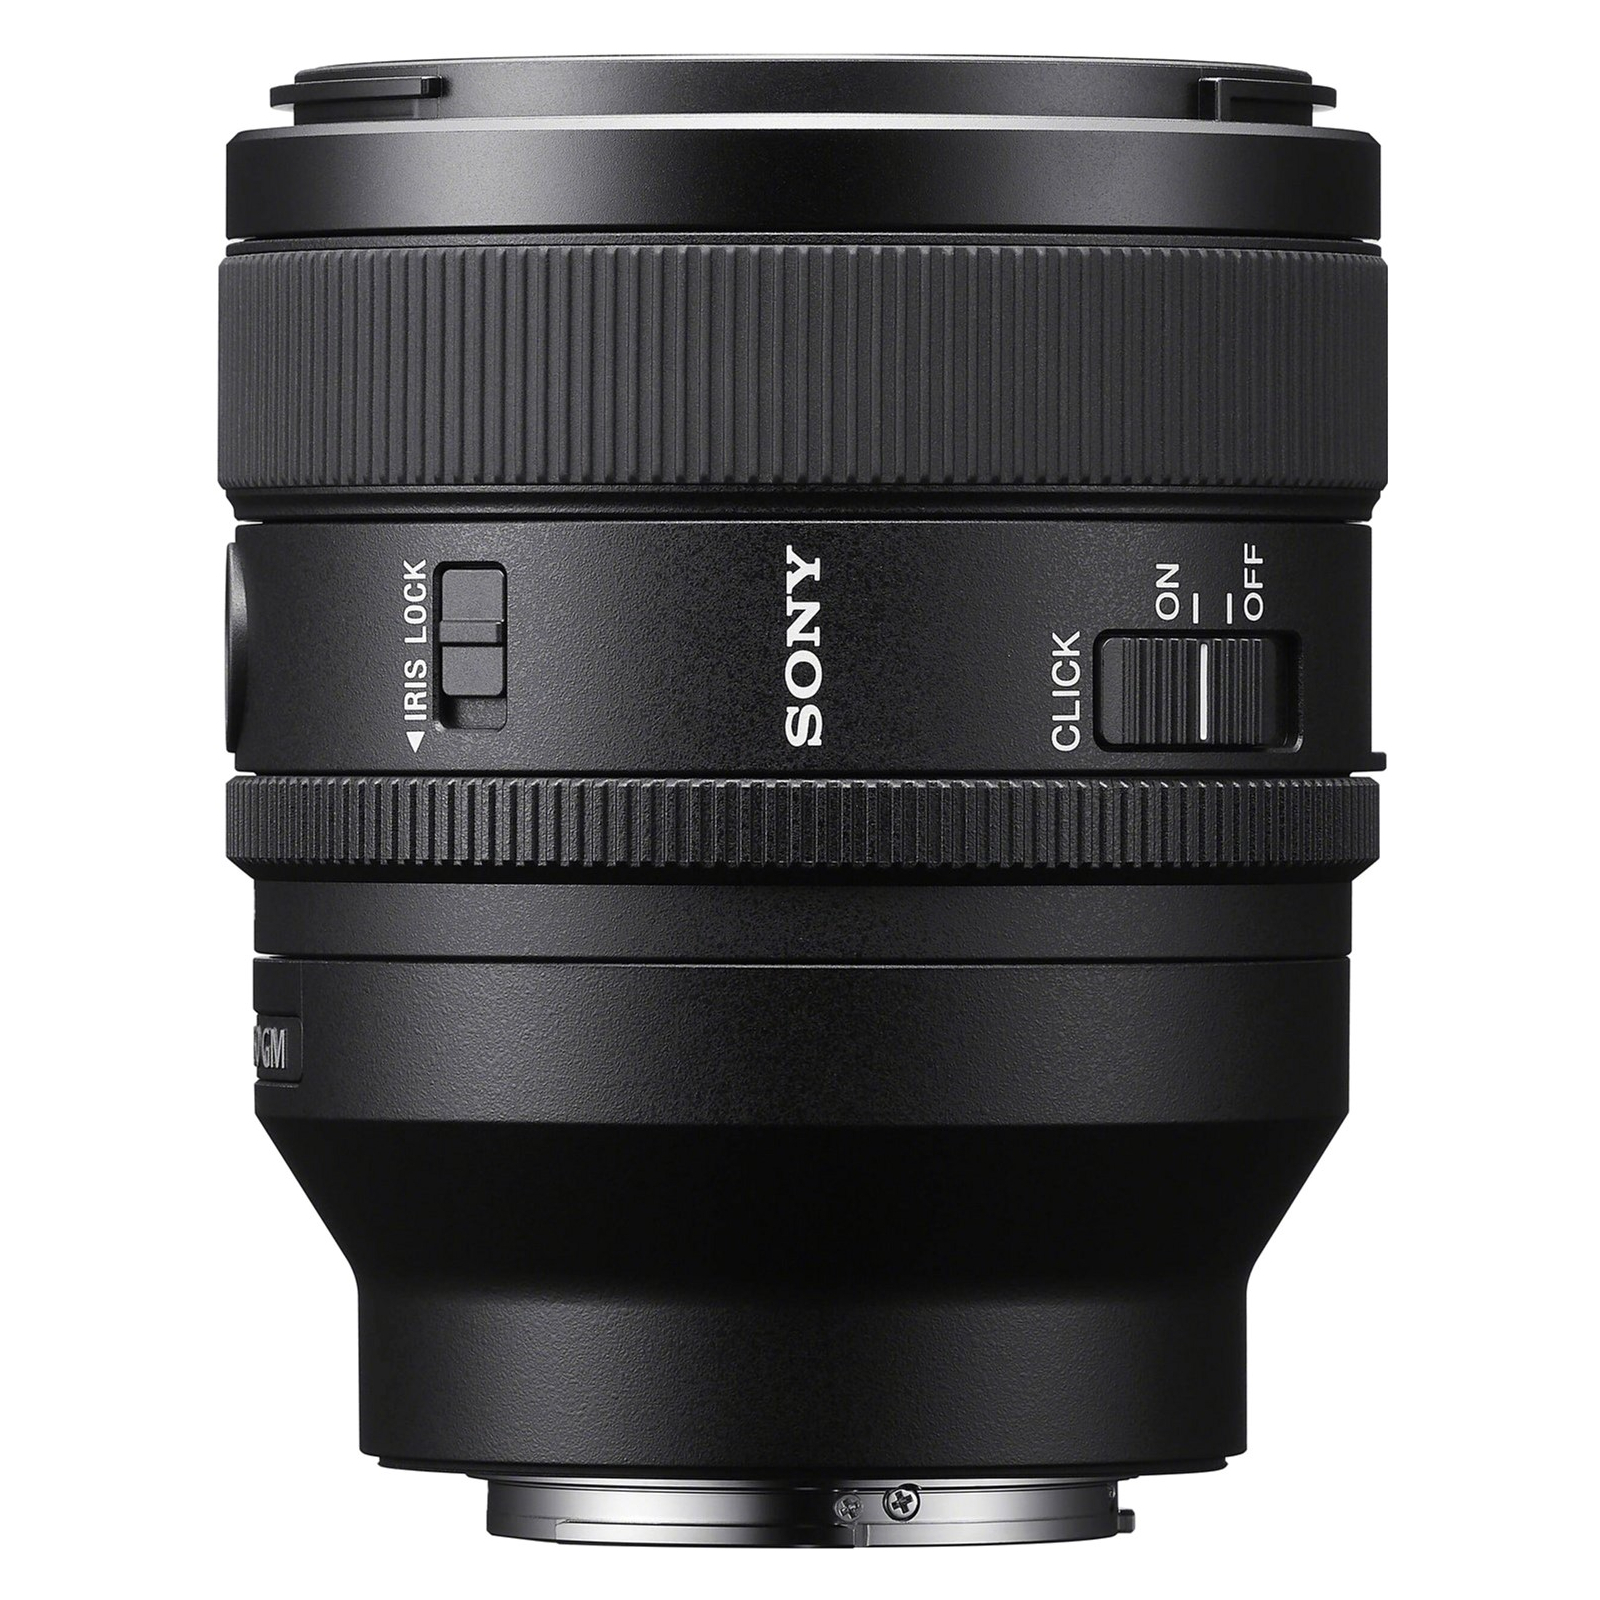 Об'єктив Sony 50mm f/1.4 GM for NEX FF (SEL50F14GM.SYX) зображення 8